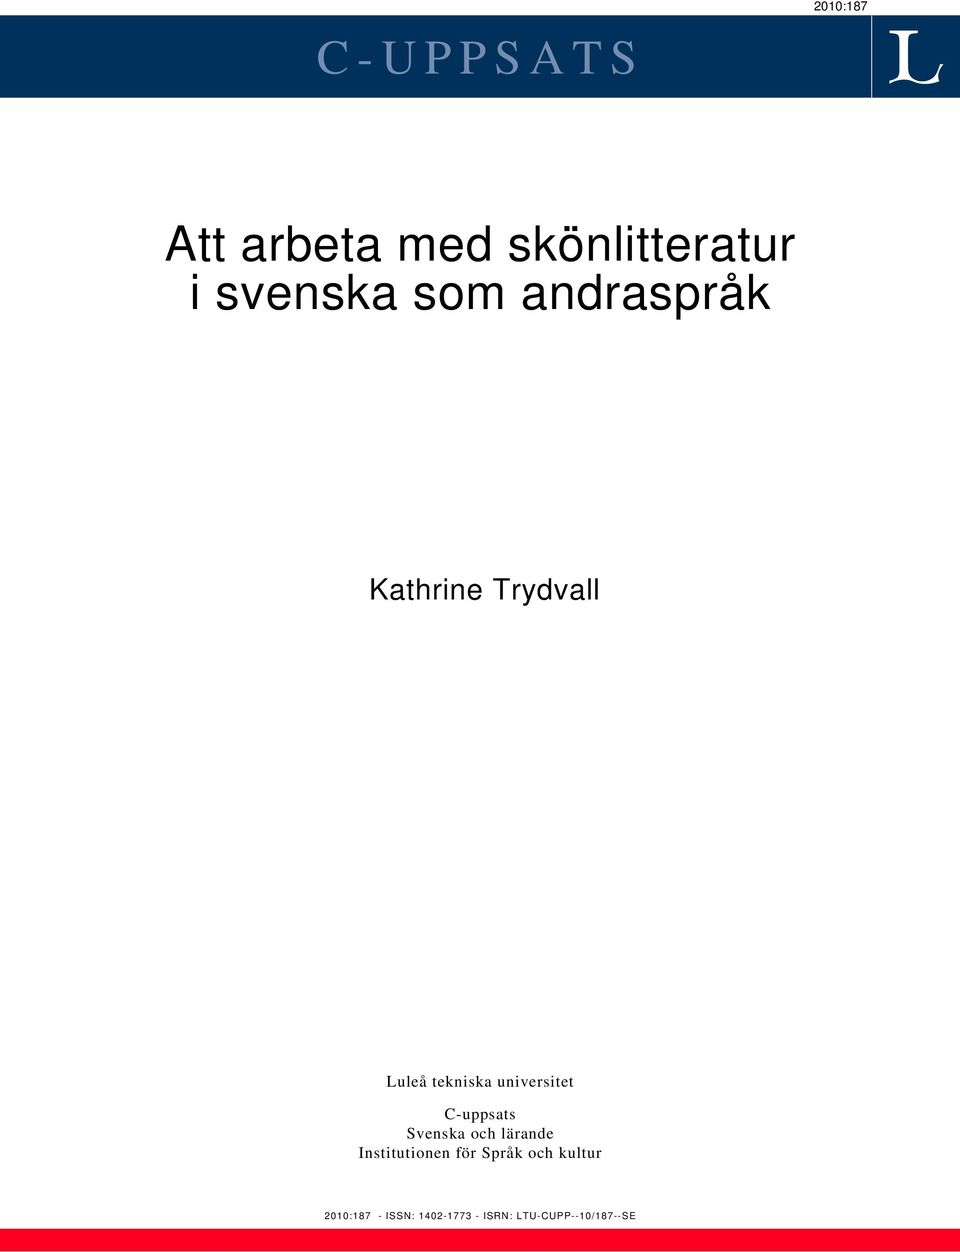 C-uppsats Svenska och lärande Institutionen för Språk och